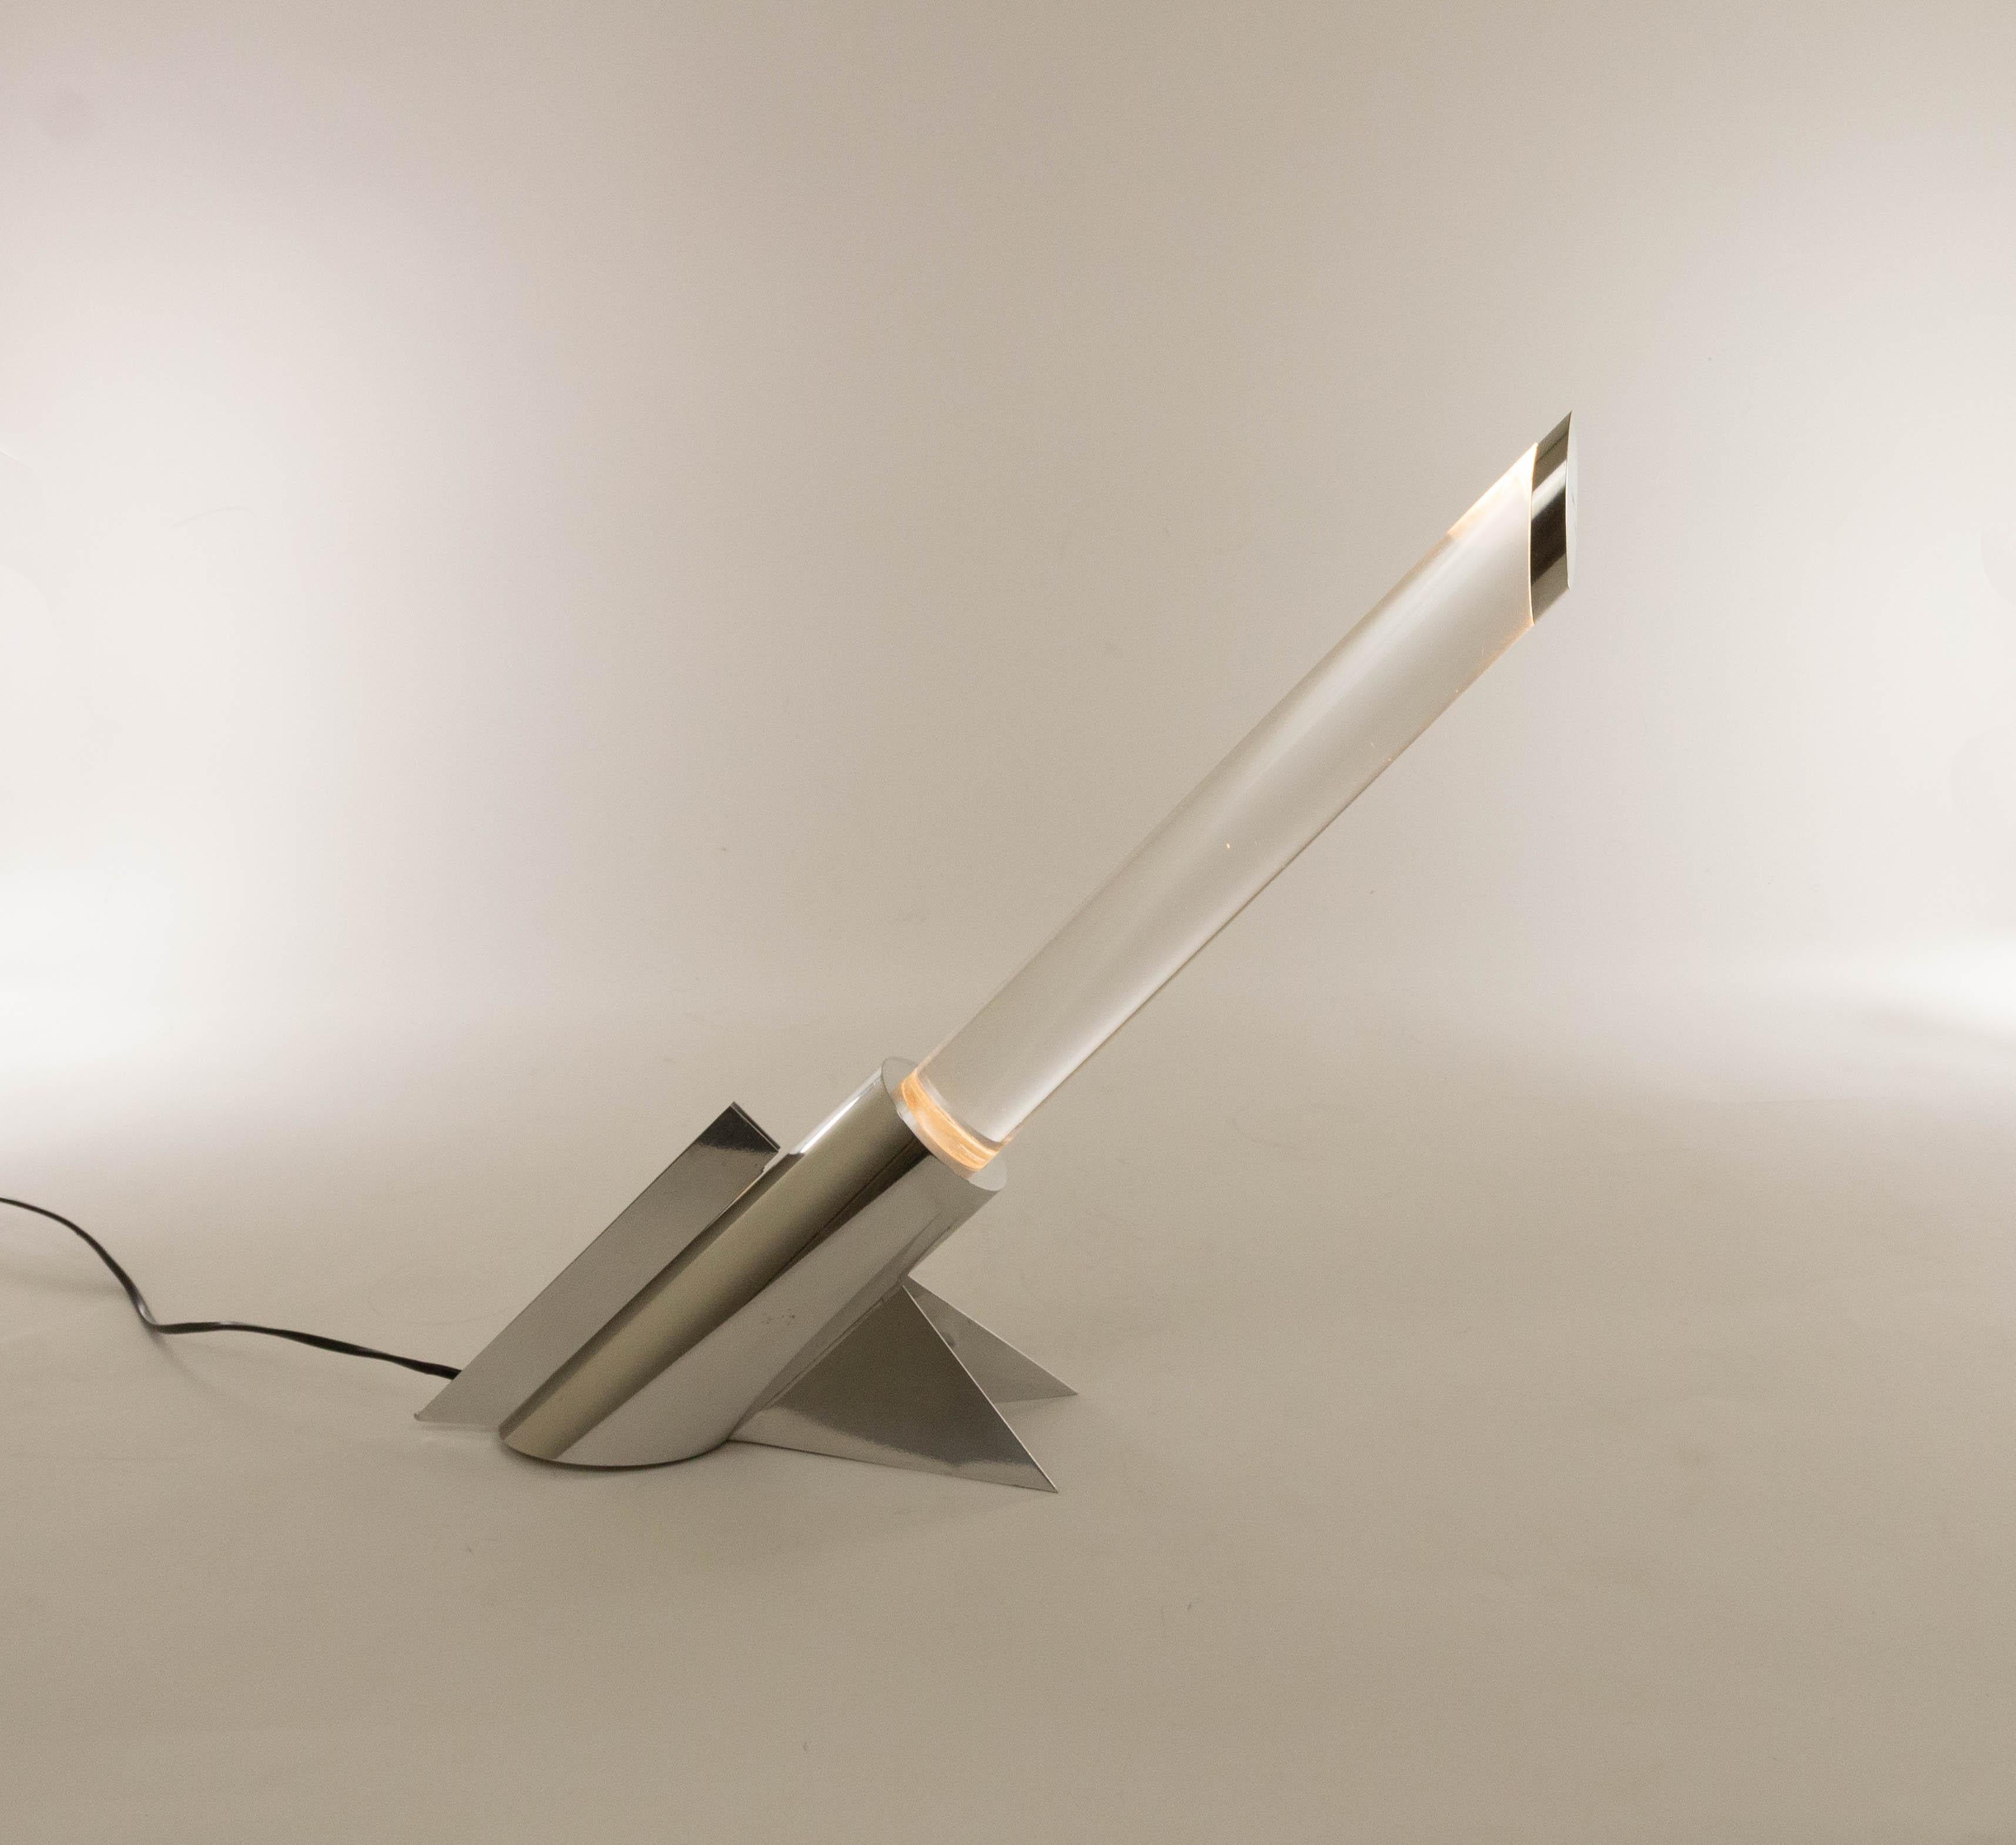 Lampe de table futuriste en plexiglas d'un fabricant inconnu, très probablement italien, probablement produite dans les années 1970.

La lampe se compose d'une base en métal chromé contenant la source lumineuse et d'un tube transparent